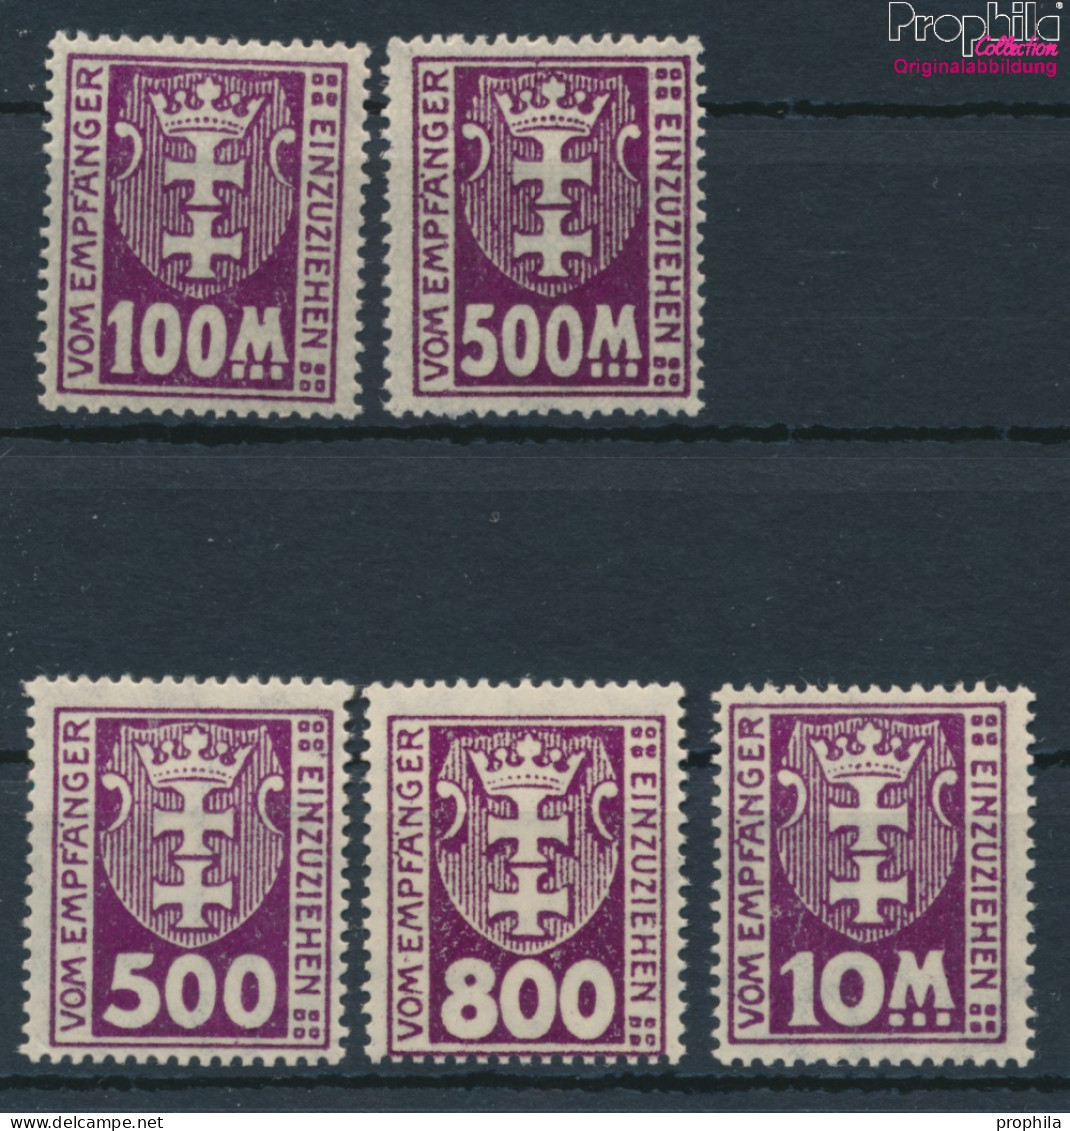 Danzig P19X-P25X (kompl.Ausg.), Stehendes Wssserzeichen Postfrisch 1923 Portomarke (10221859 - Taxe